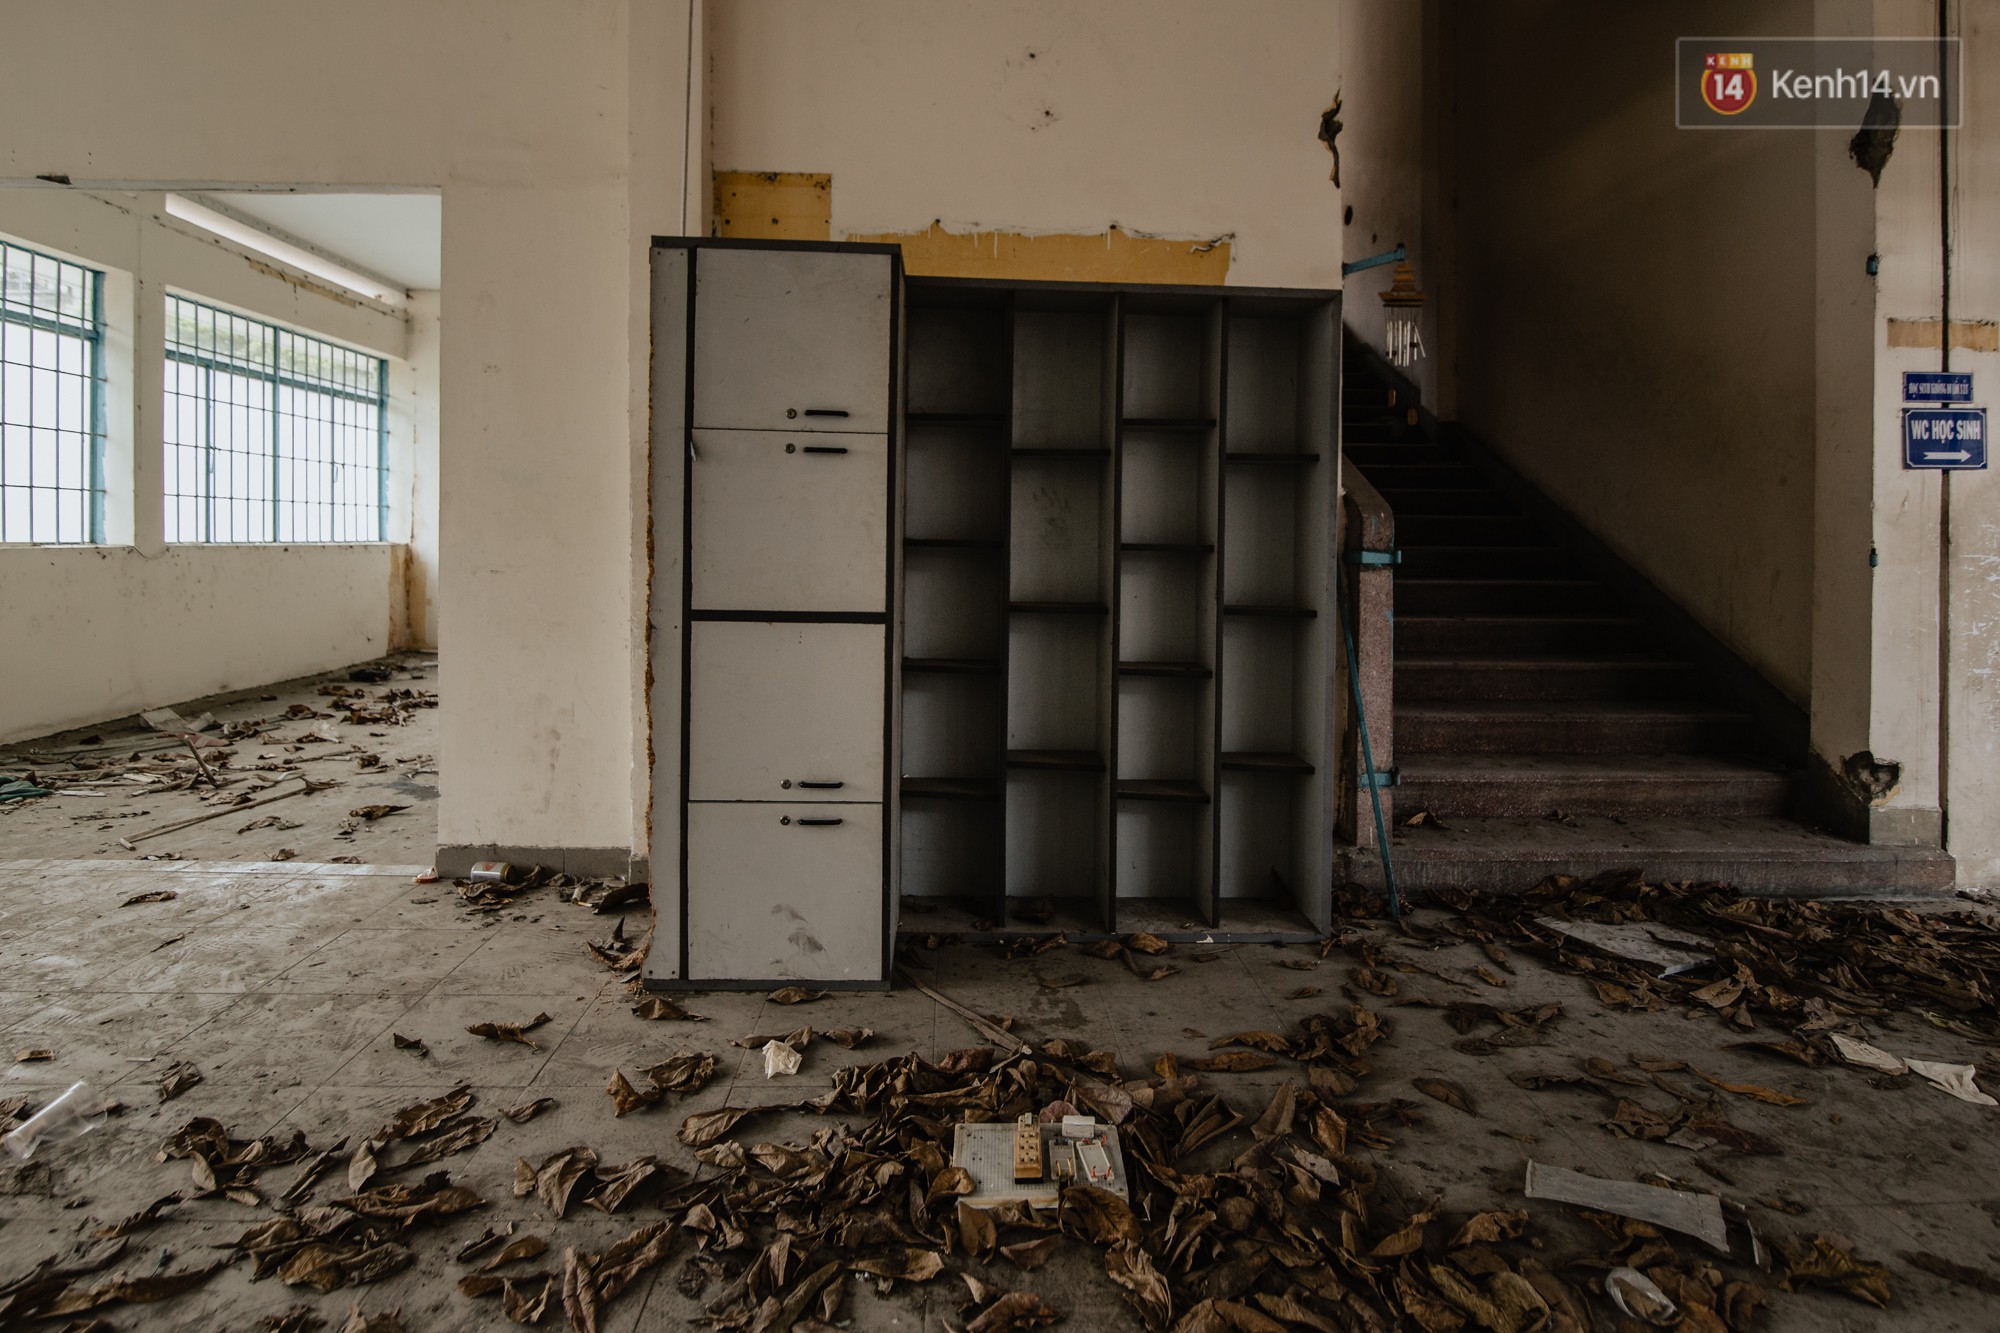 Khung cảnh rợn người bên trong trường học 40 năm tuổi bị bỏ hoang tại Sài Gòn - Ảnh 10.